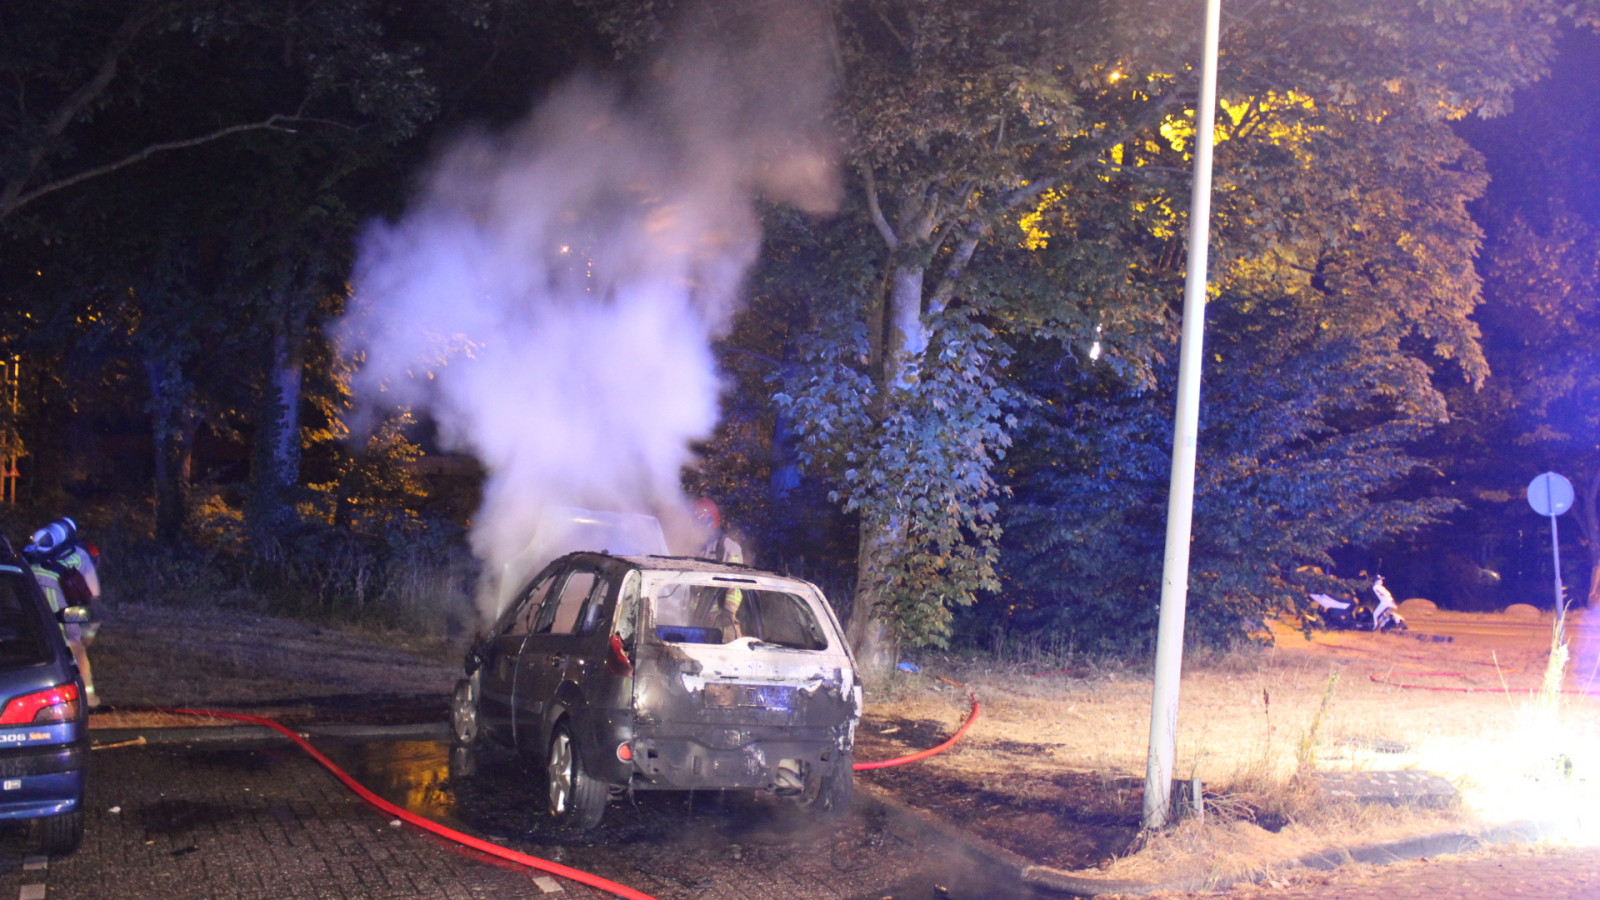 Wederom auto in vlammen op in Noord; politie doet onderzoek